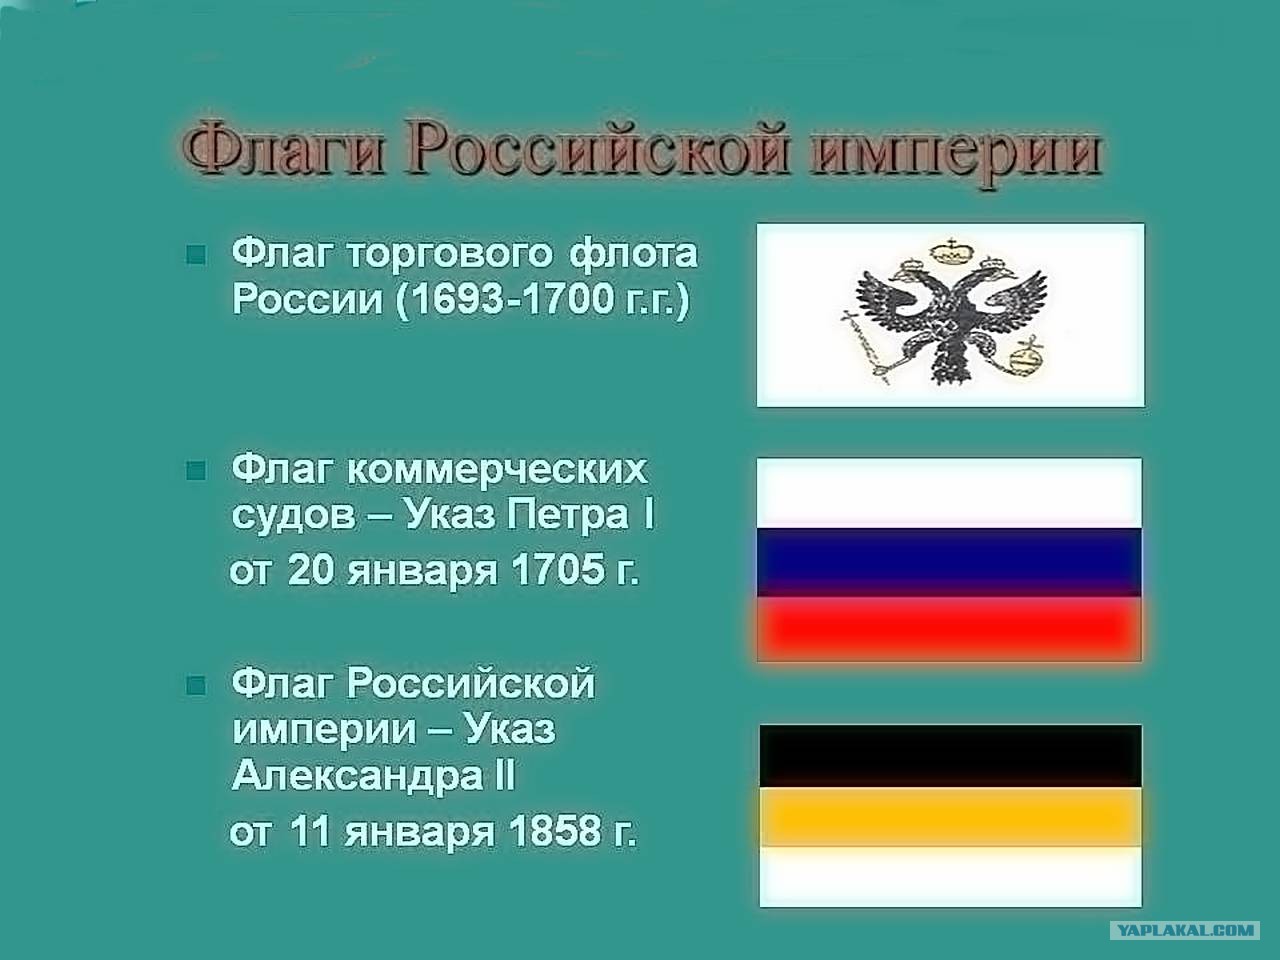 Флаг торгового флота Российской империи до 1917